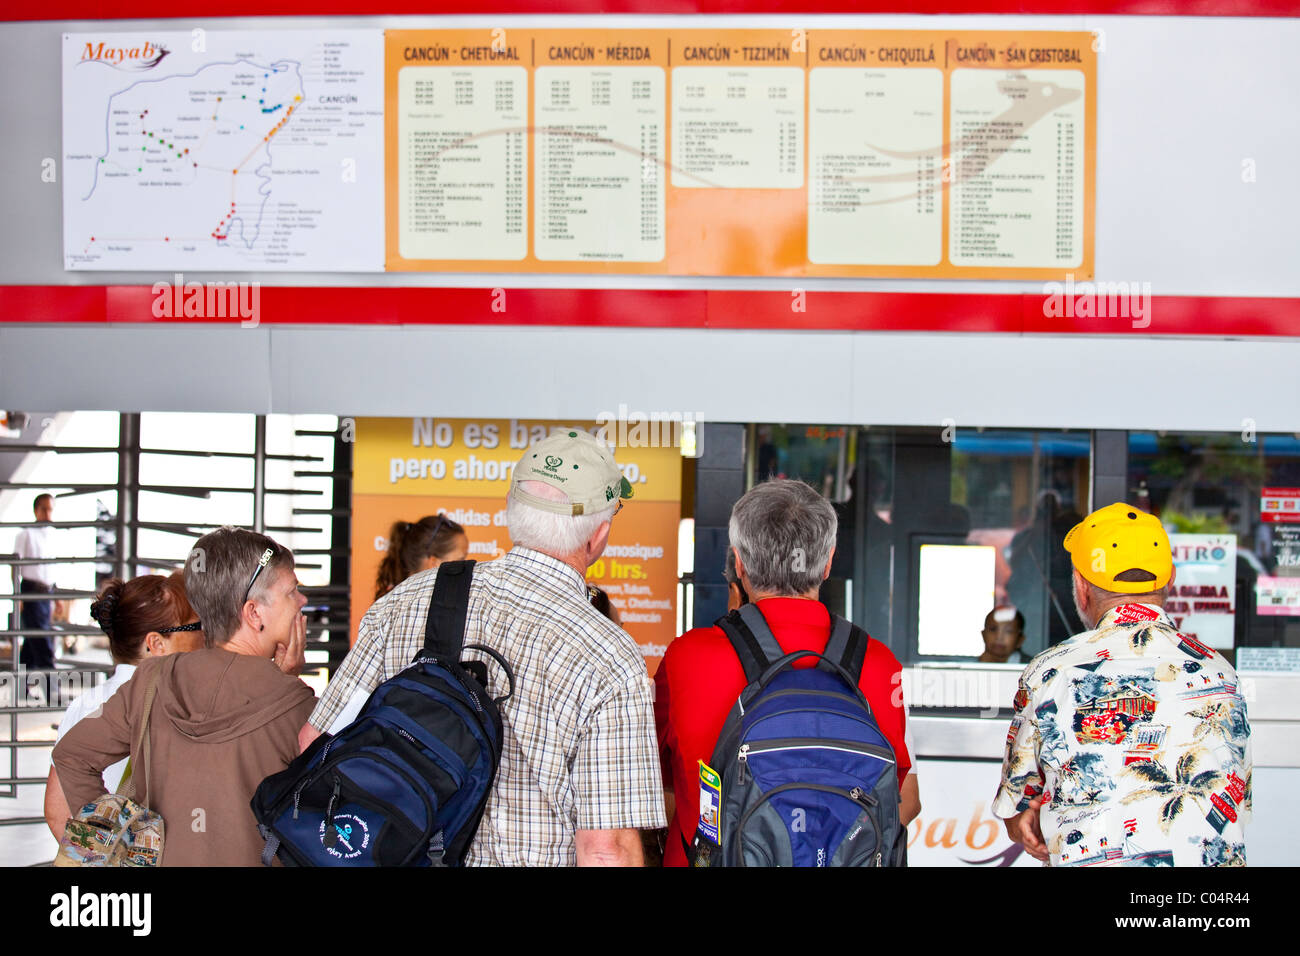 Escursionisti la lettura del calendario presso la stazione degli autobus, Cancun Quintana Roo, Messico Foto Stock